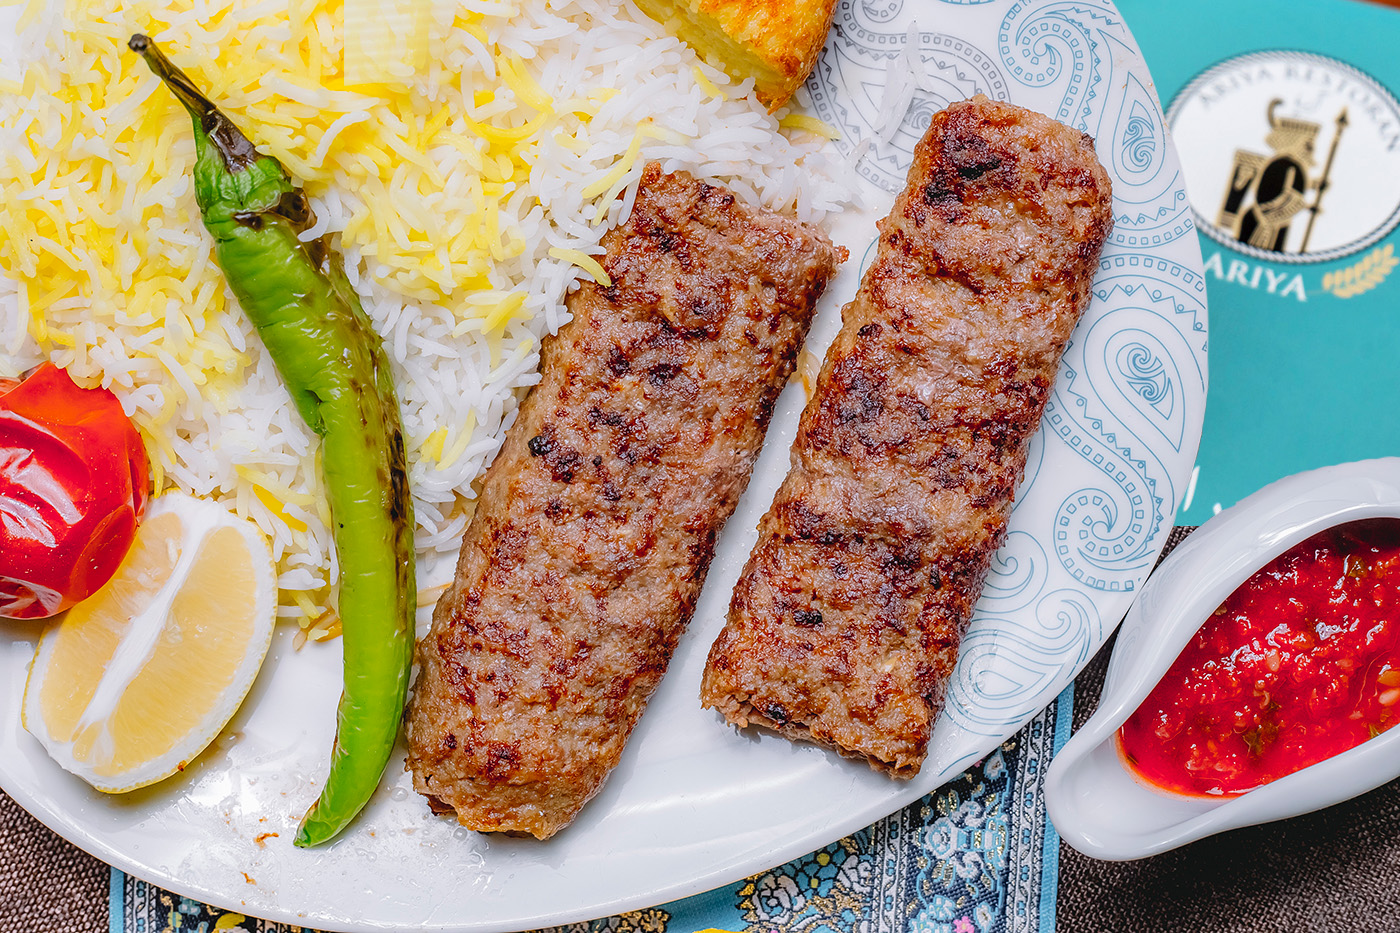 İstanbul'daki Ariya Restaurant'ta Türk Fars Füzyon Mutfağı'nın egzotik lezzetlerini keşfedin. Unutulmaz bir yemek deneyimi için Fars yemekleri ve Türk lezzetlerinin eşsiz bir karışımının tadını çıkarın.